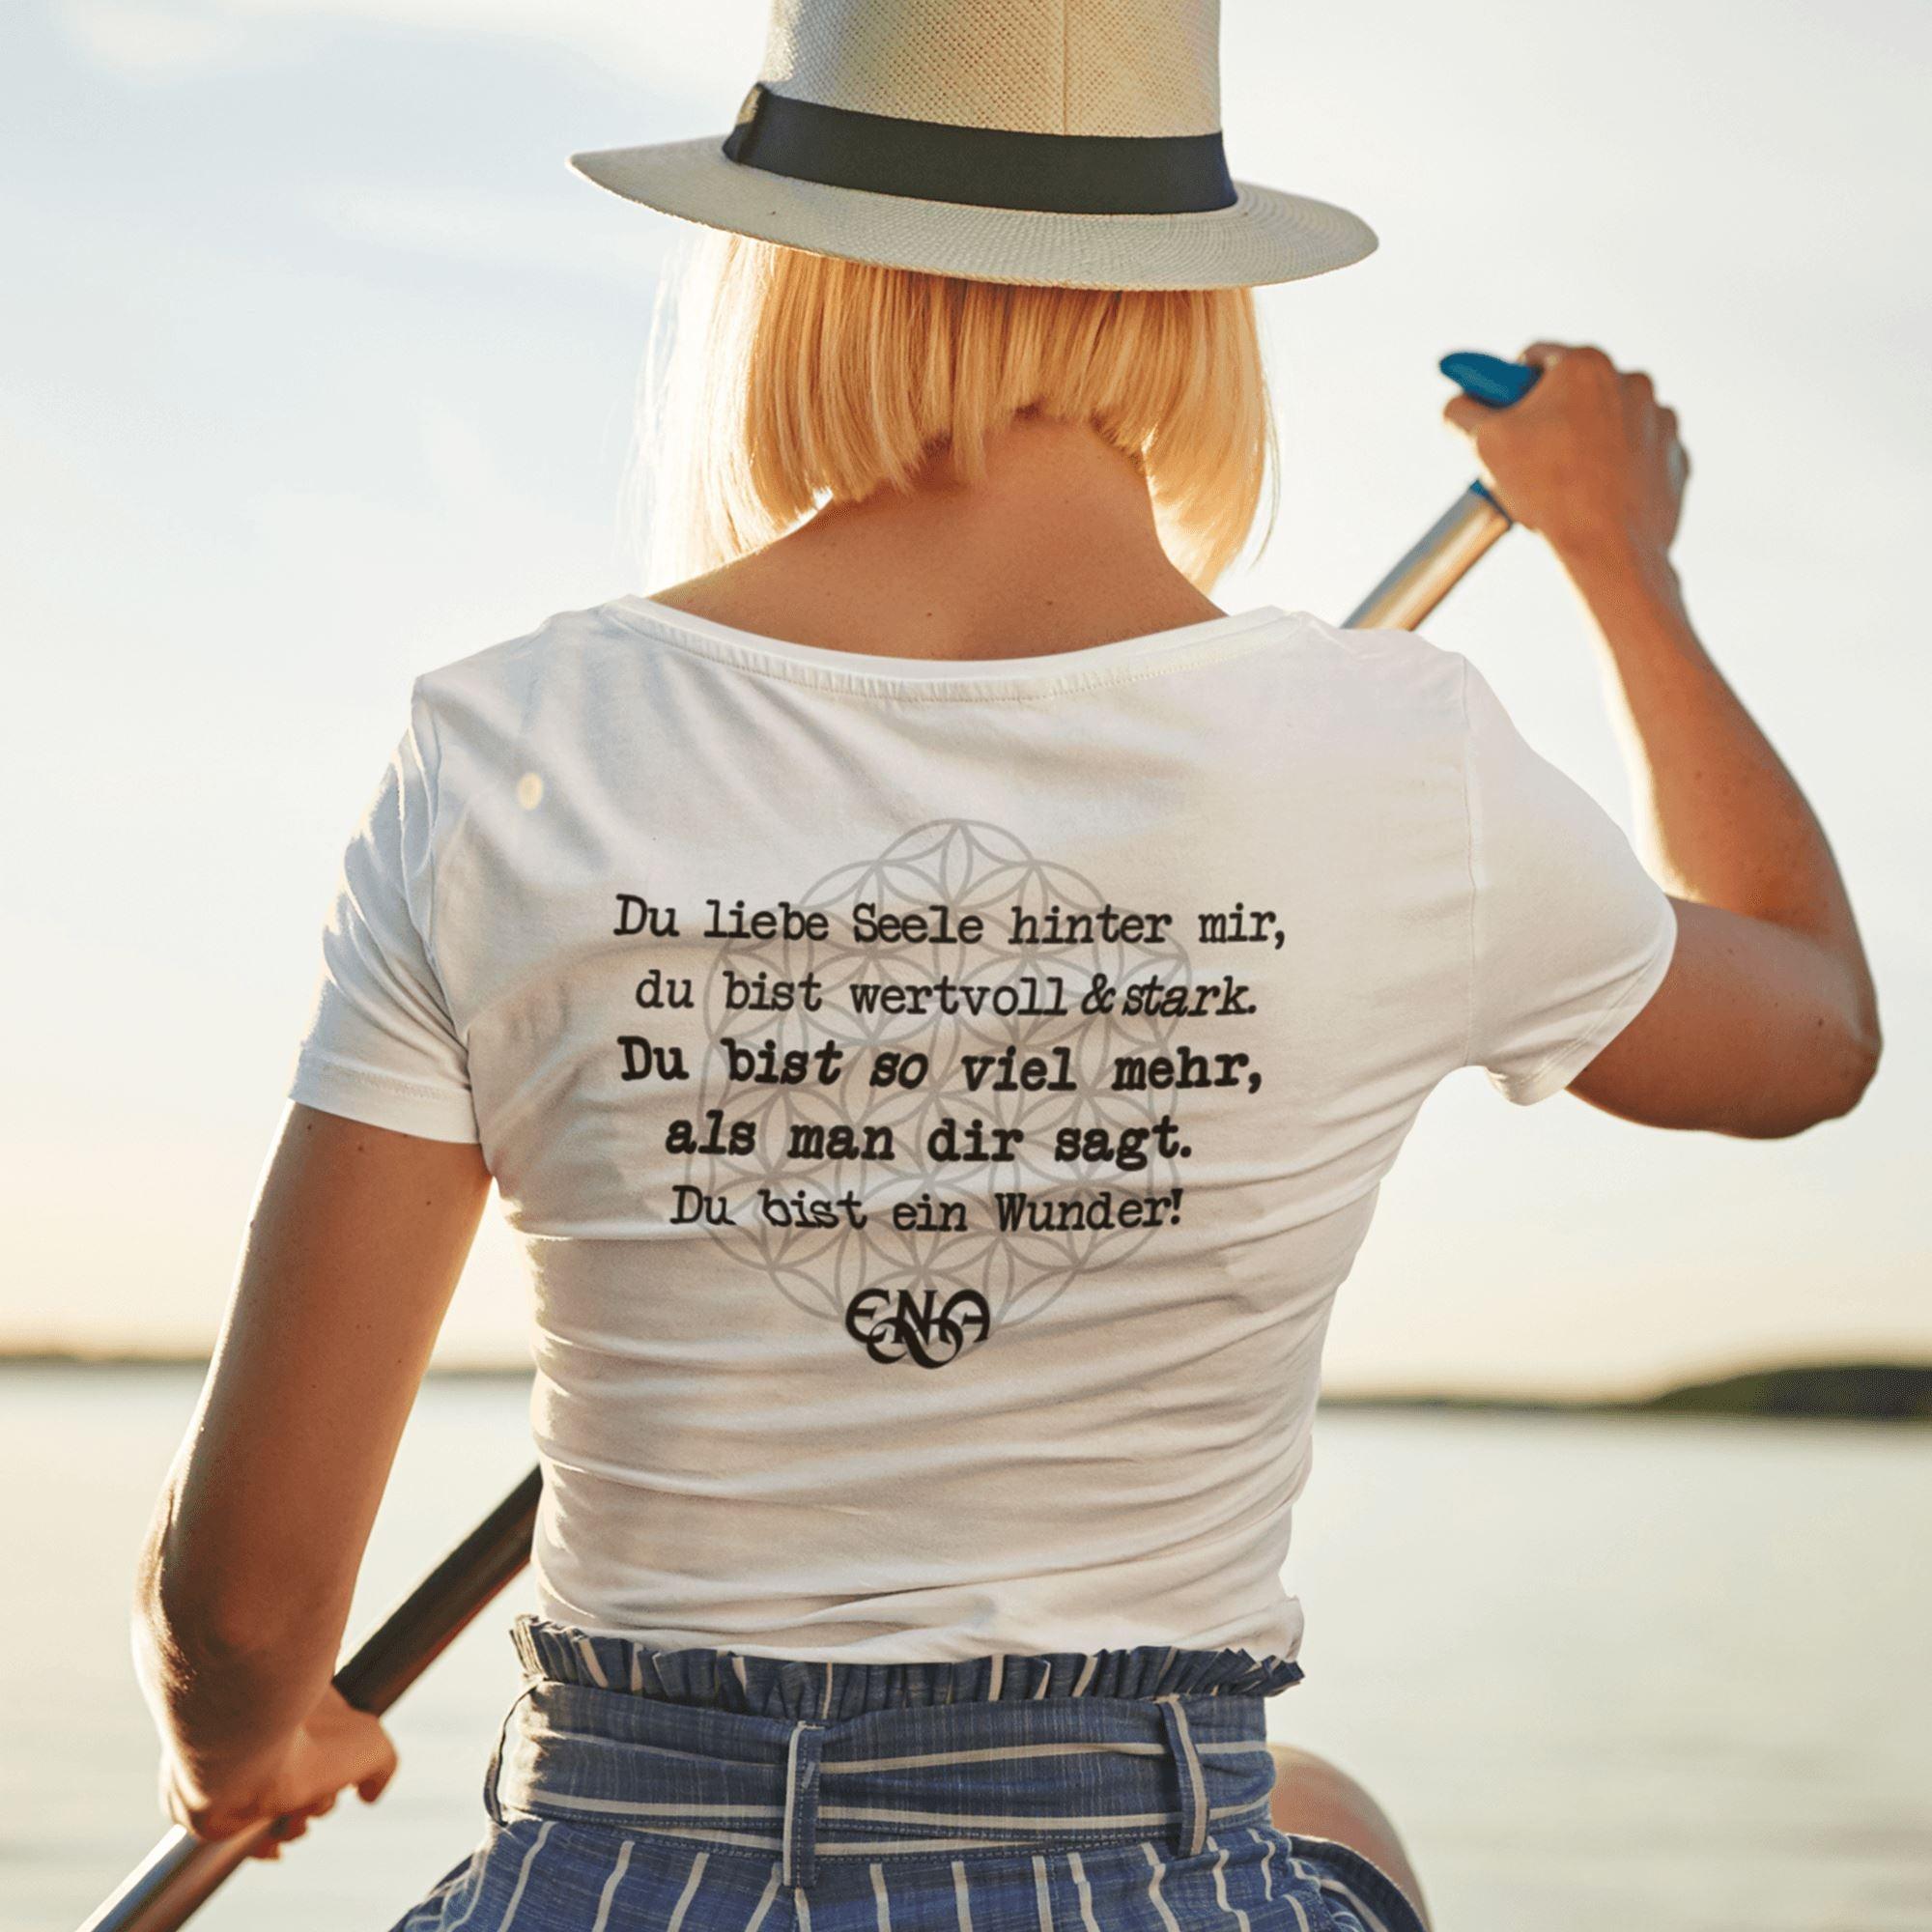 Du liebe Seele hinter mir - Backprint [ENA] - Damen Organic Shirt - Team Vegan © vegan t shirt